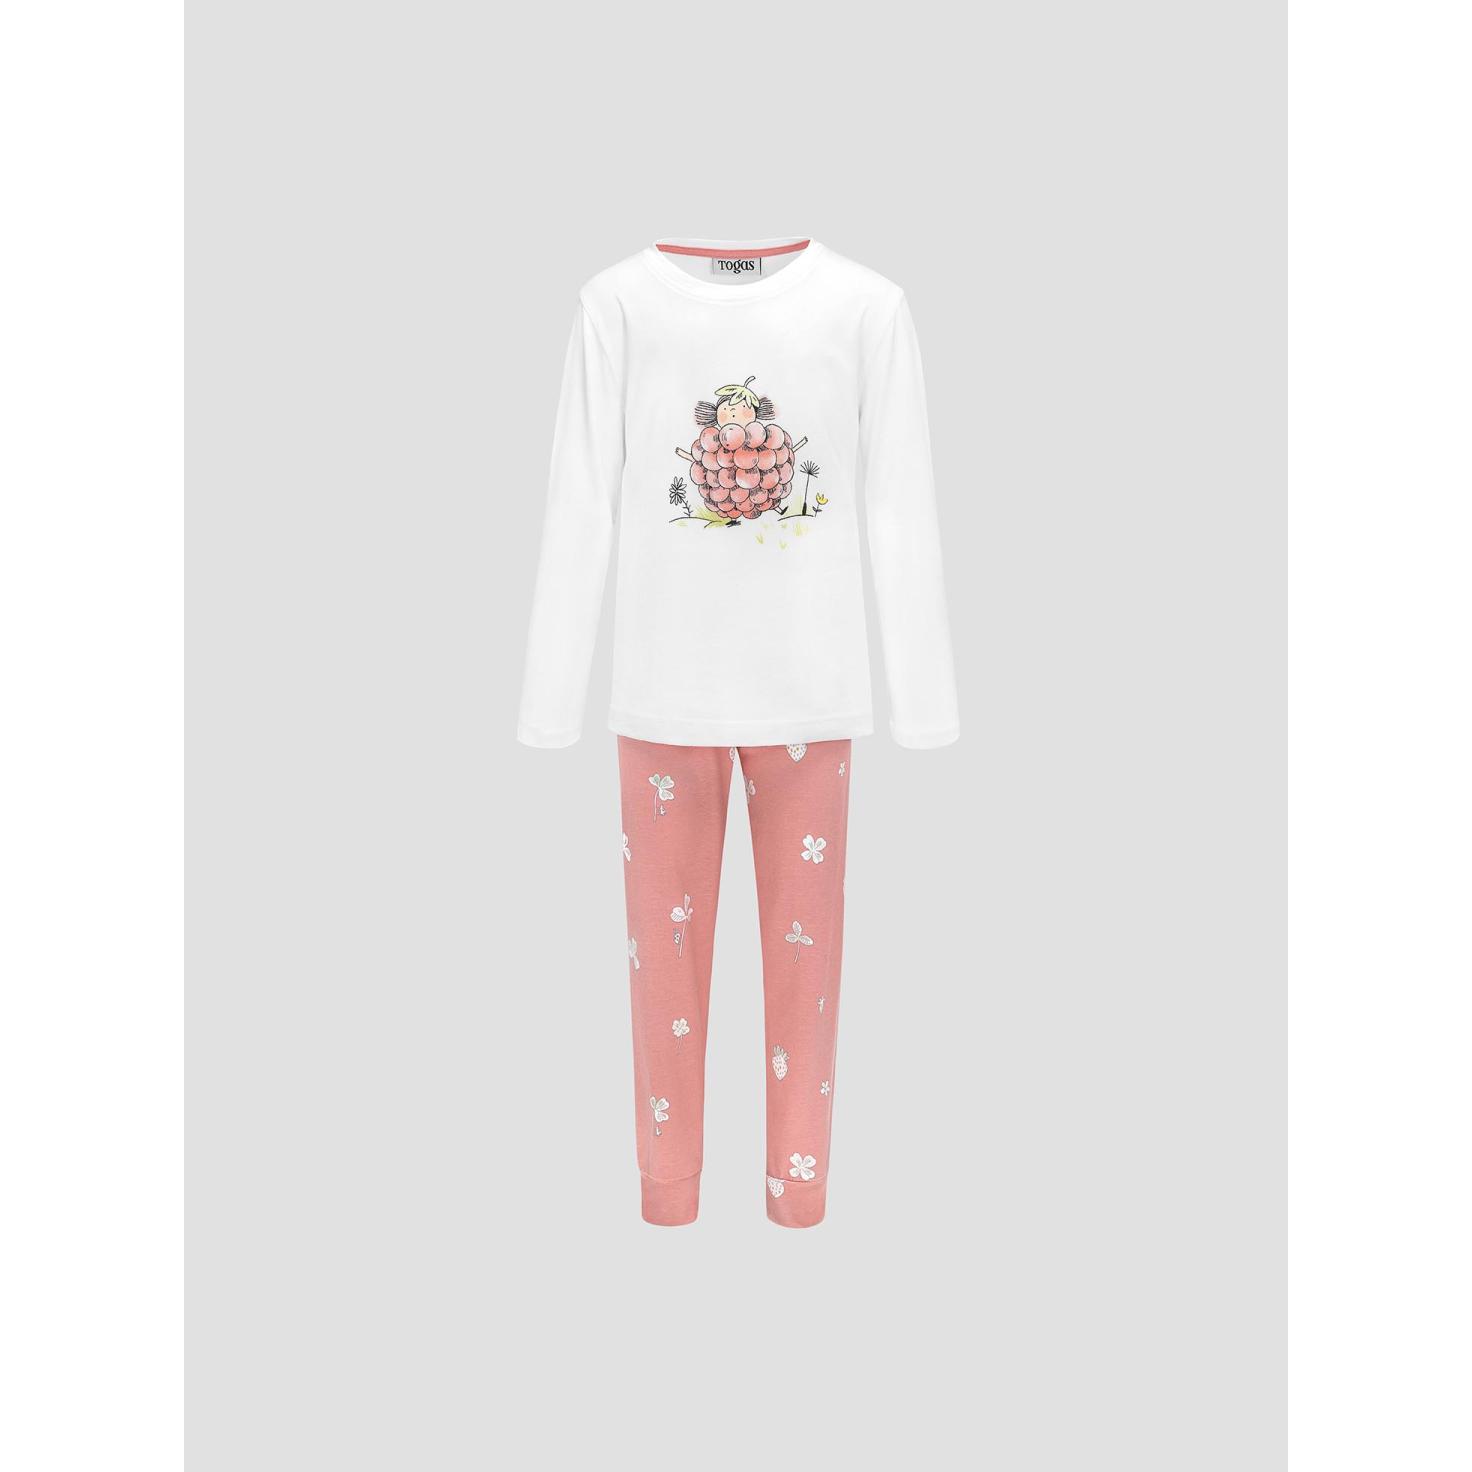 Пижама для девочек Kids by togas Стробби бело-розовый 128-134 см жен пижама с шортами инь янь белый р 46